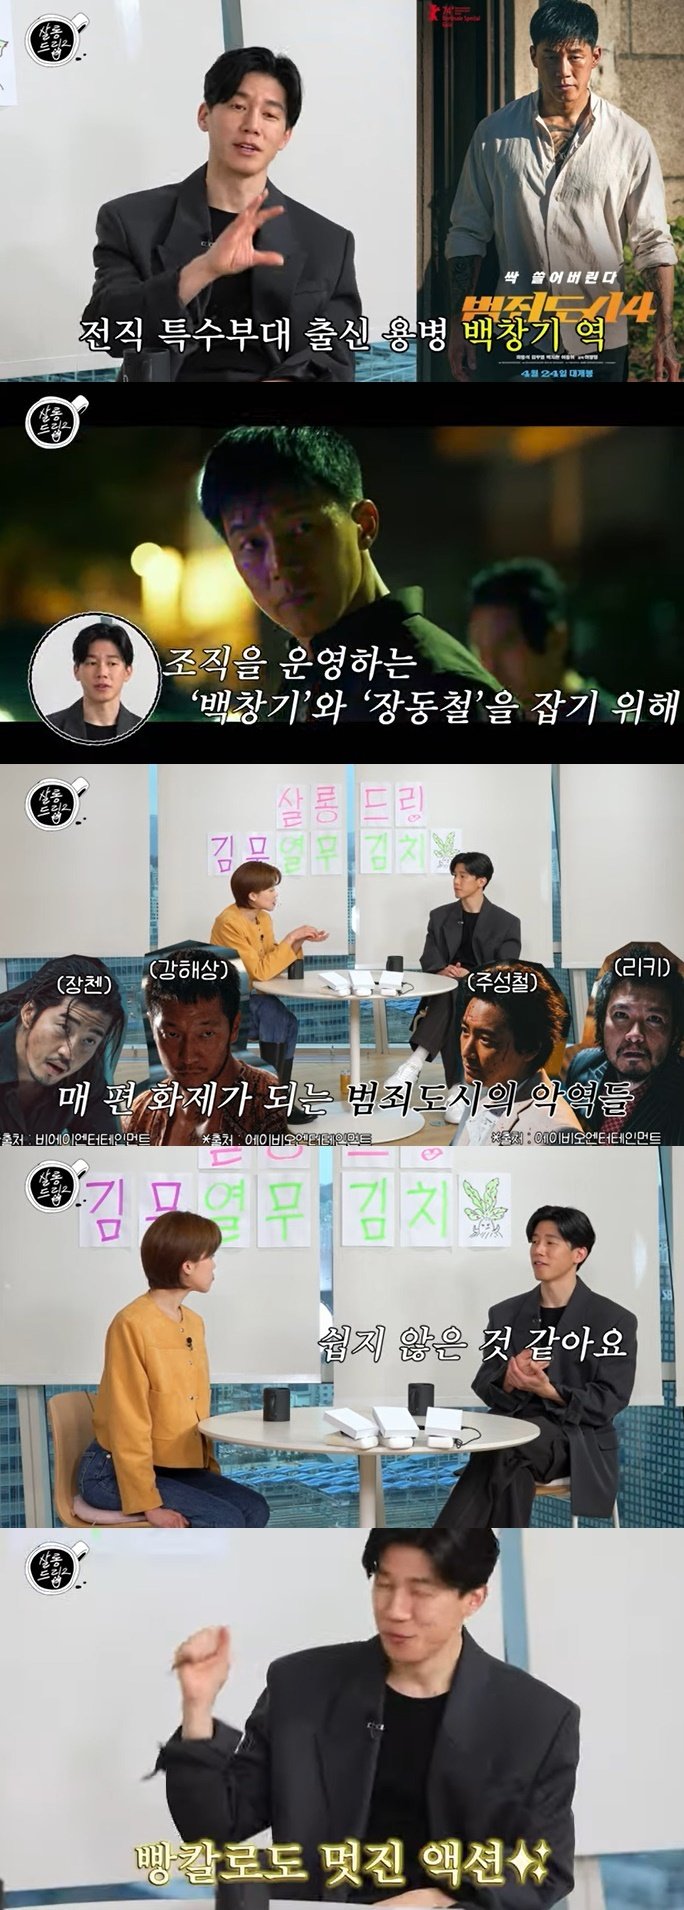 '범죄도시4' 김무열 "가장 악독한 빌런? 다른 빌런과 비교 어려워"